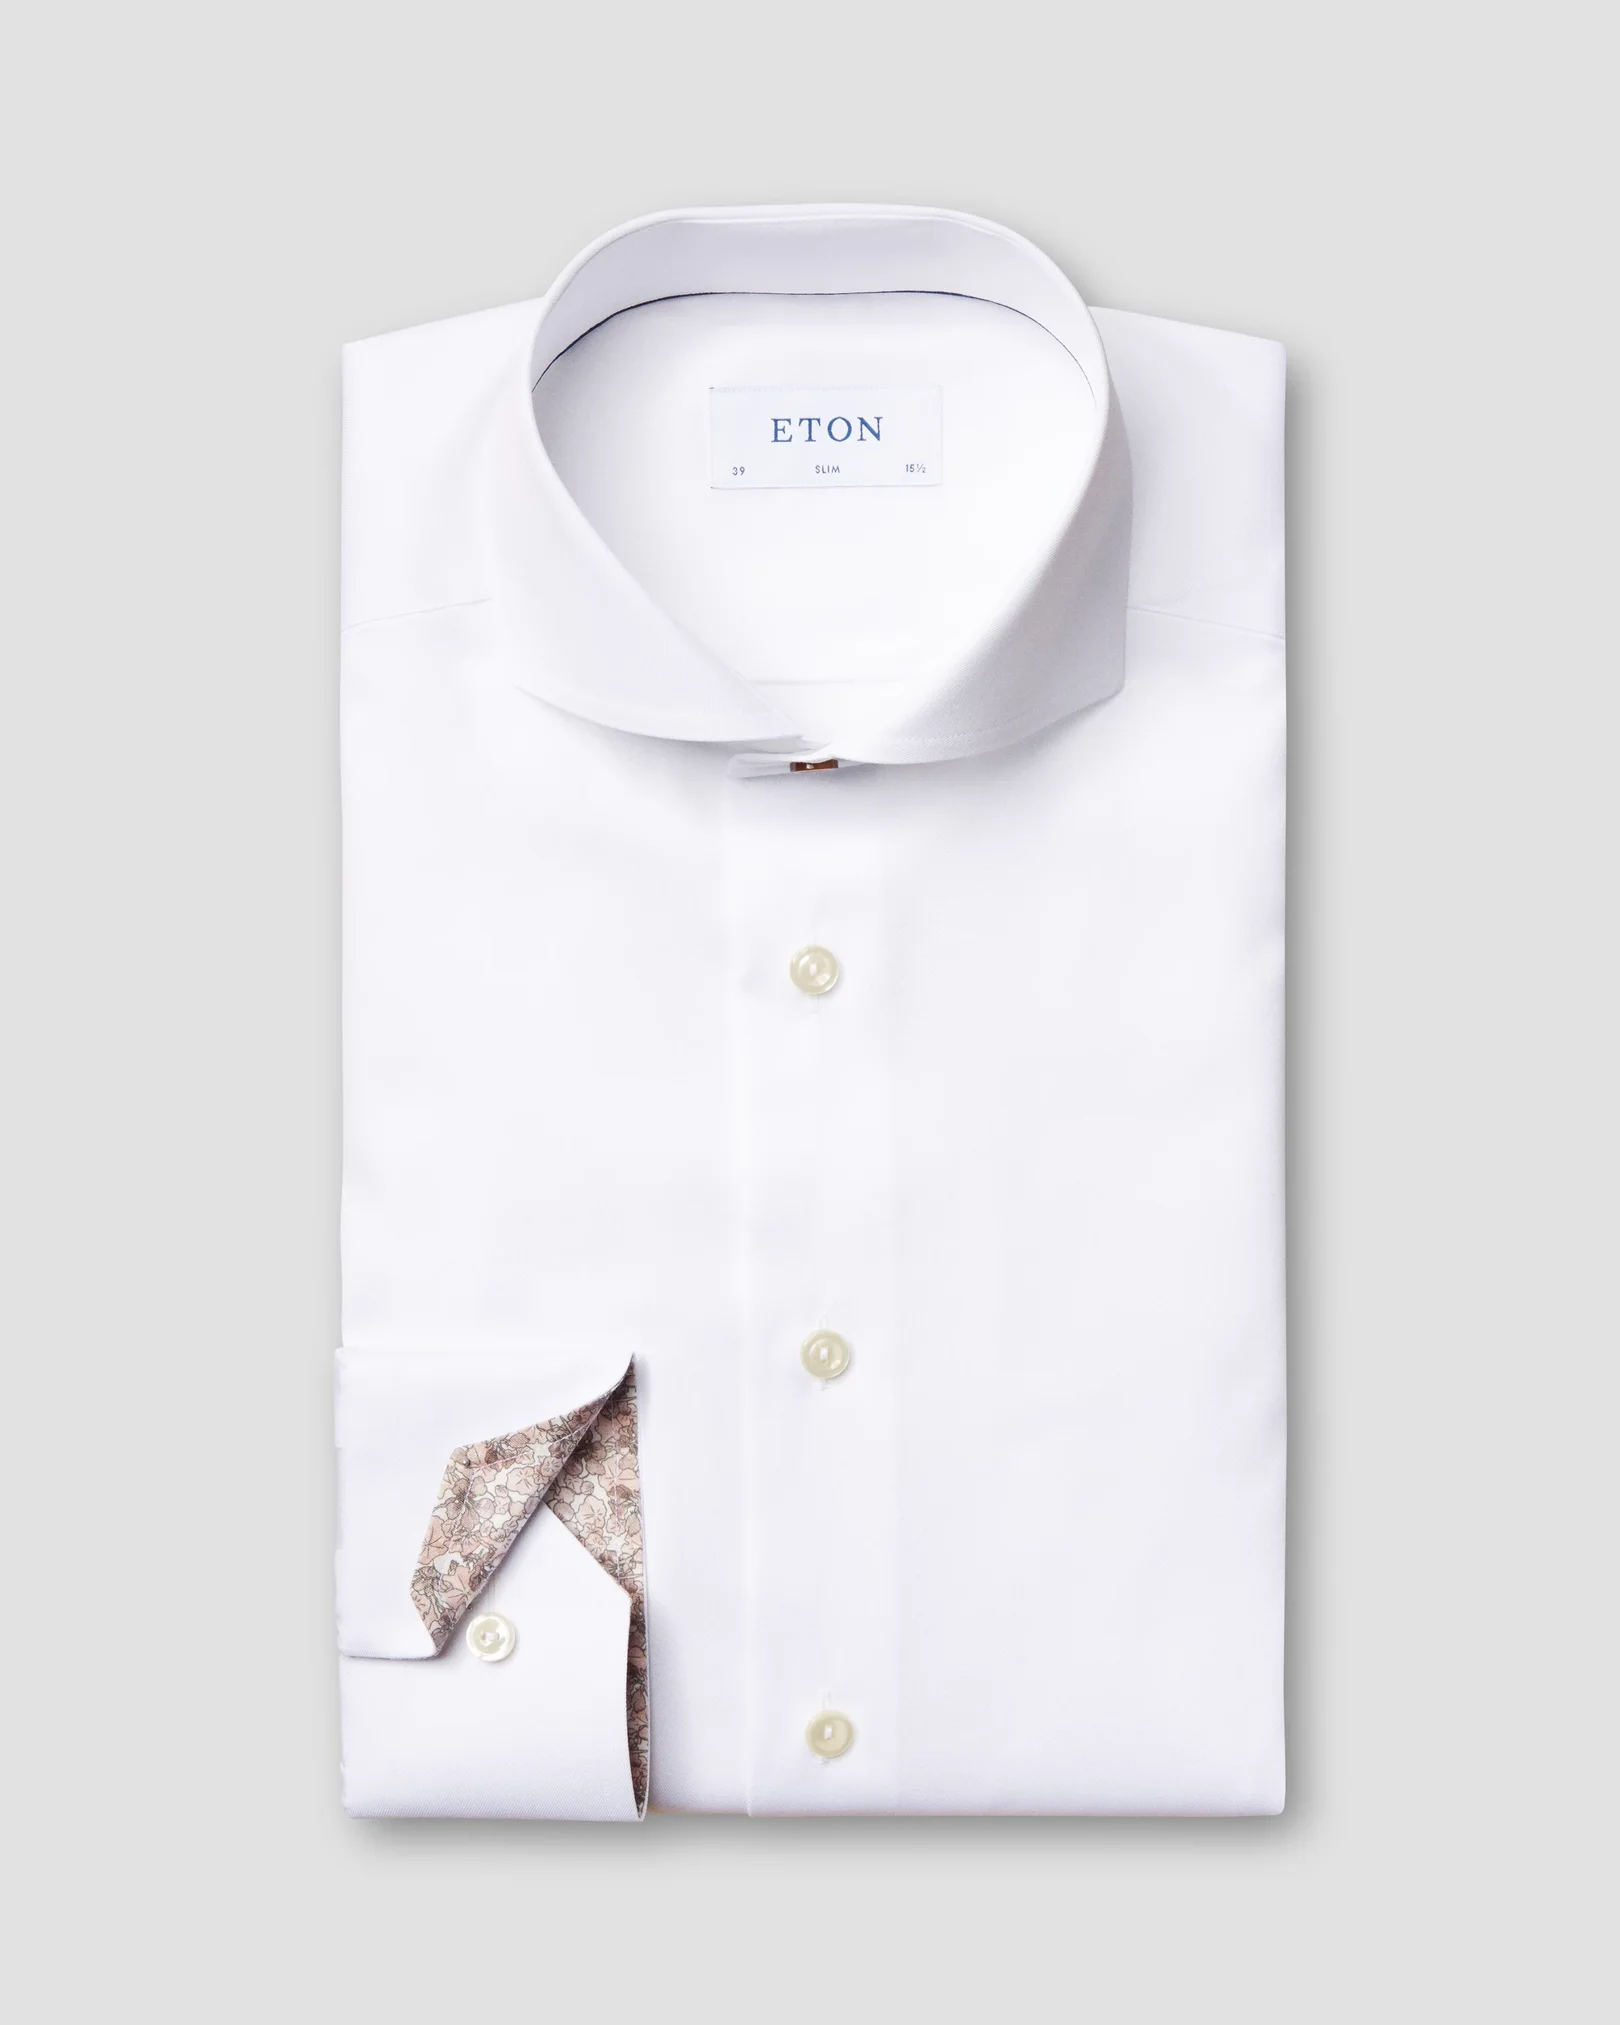 Eton - white twill shirt printed details extreme cut away